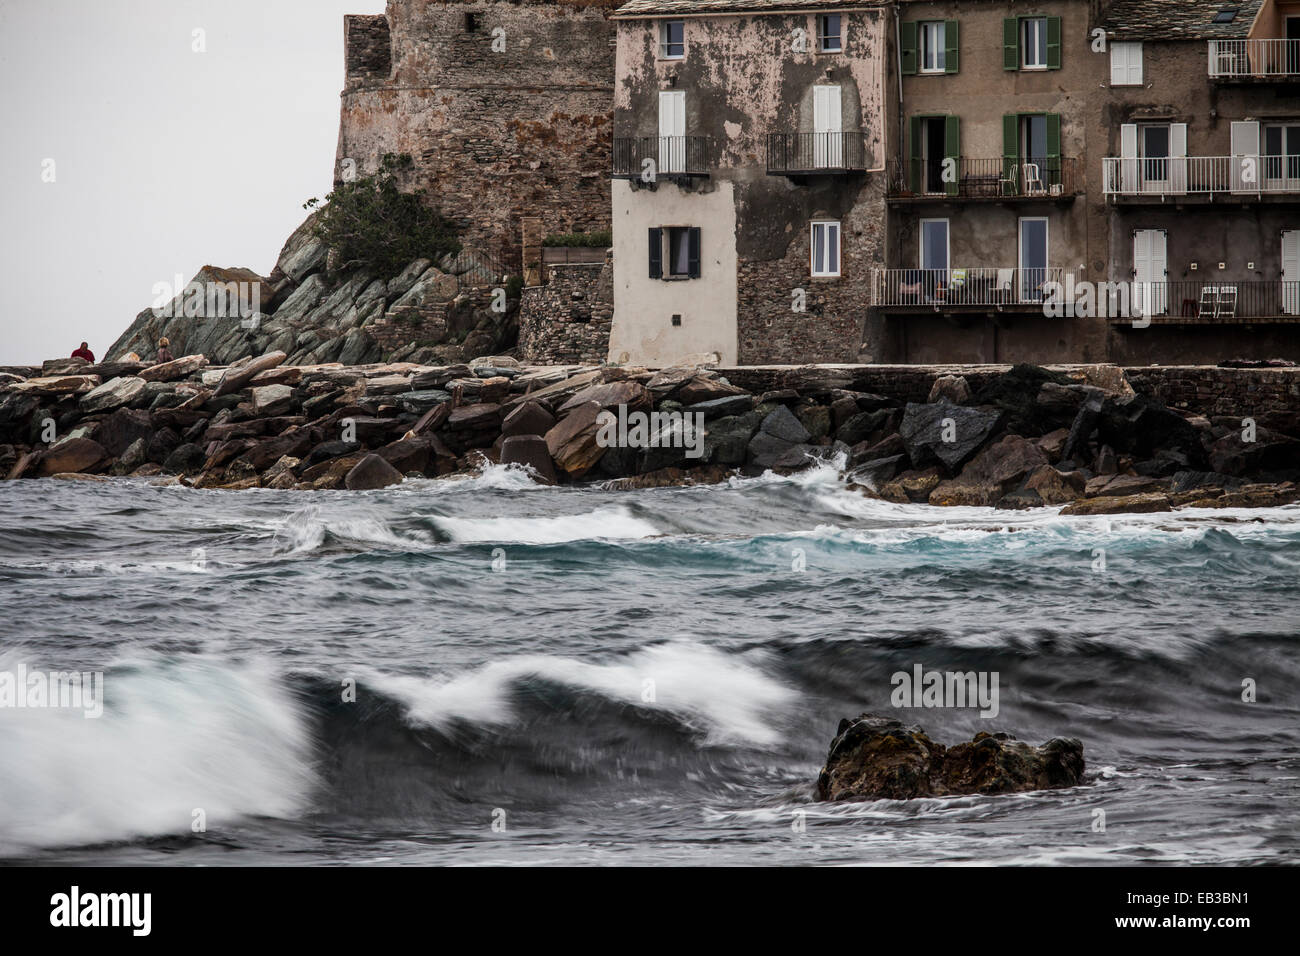 France, Corsica, Cap de Corse, Erbalunga, Building on seashore Stock Photo